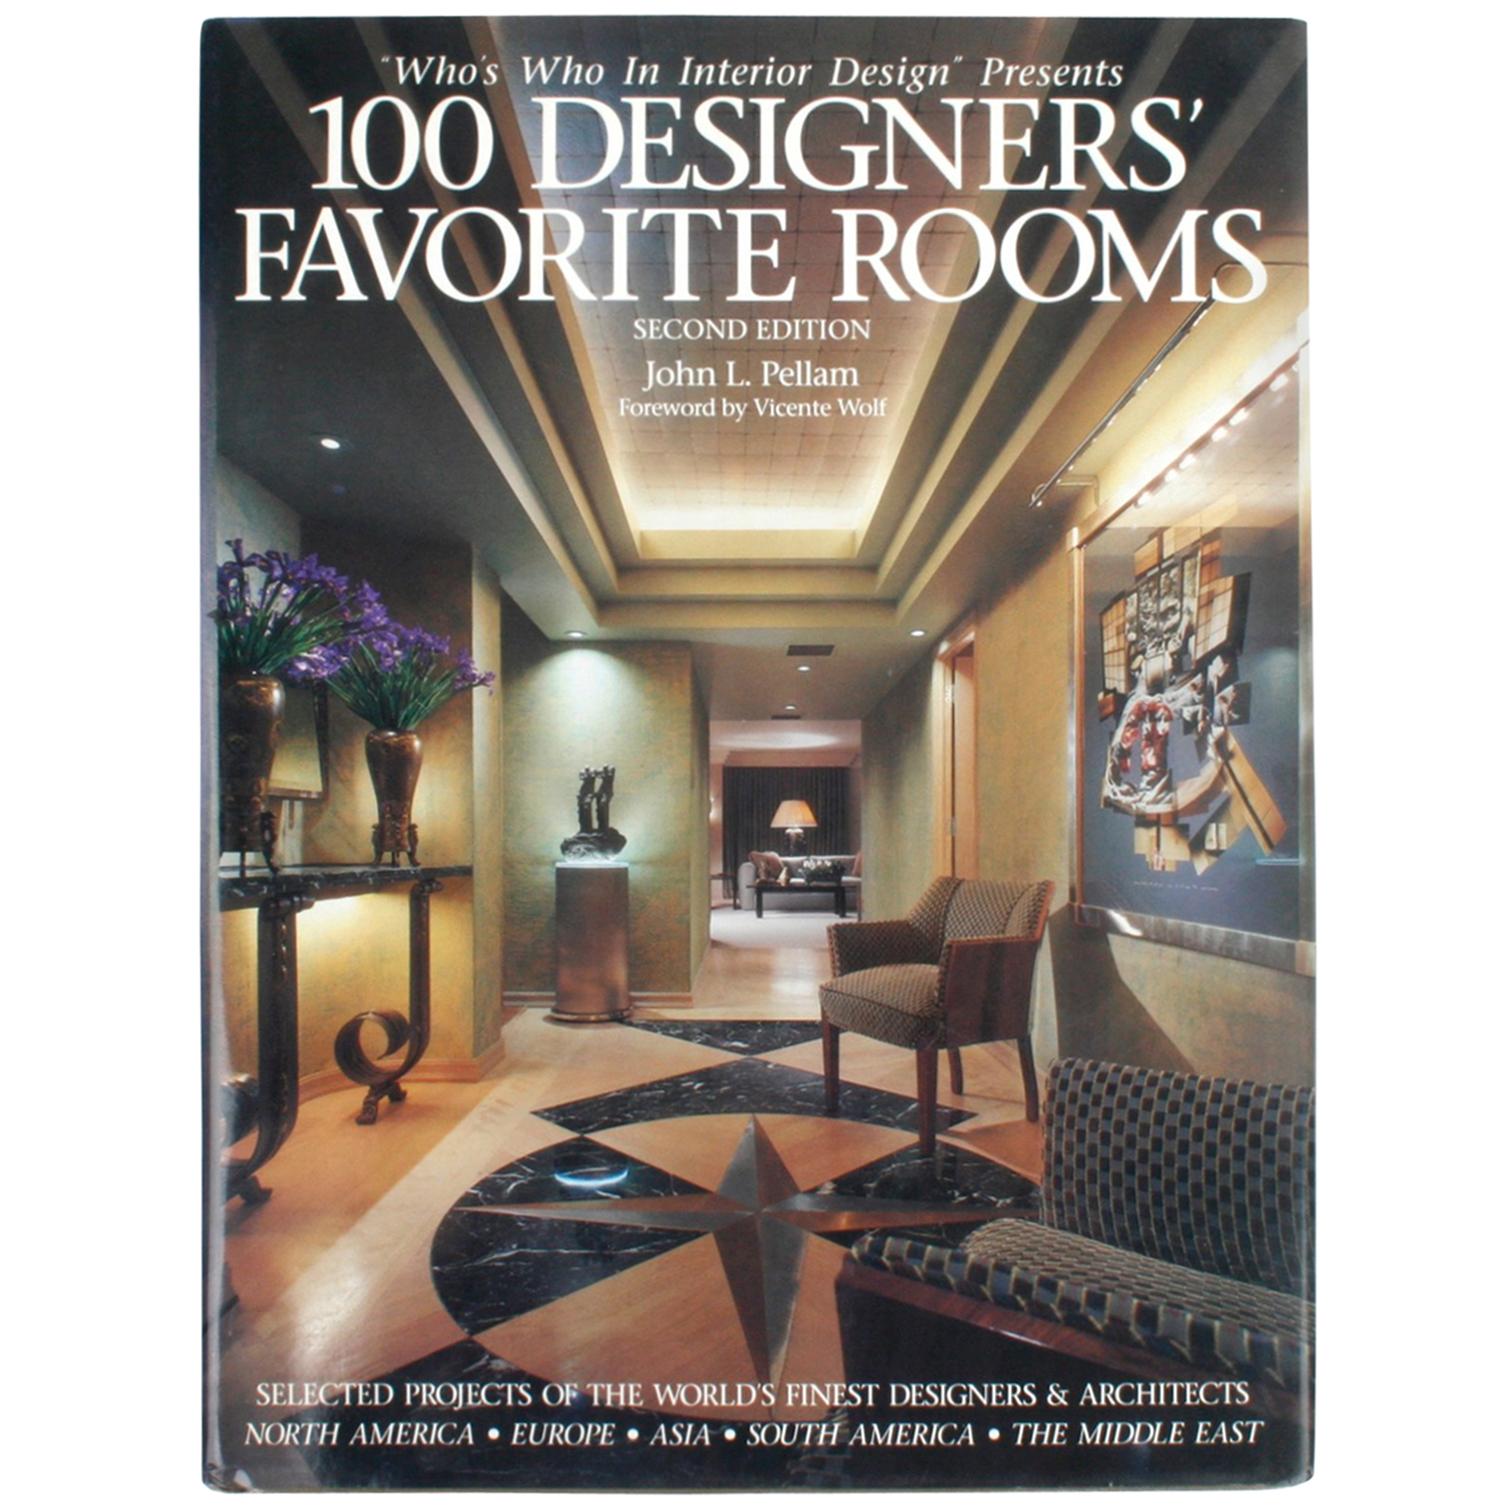 100 Designers' Favorite Rooms by John L. Pellam